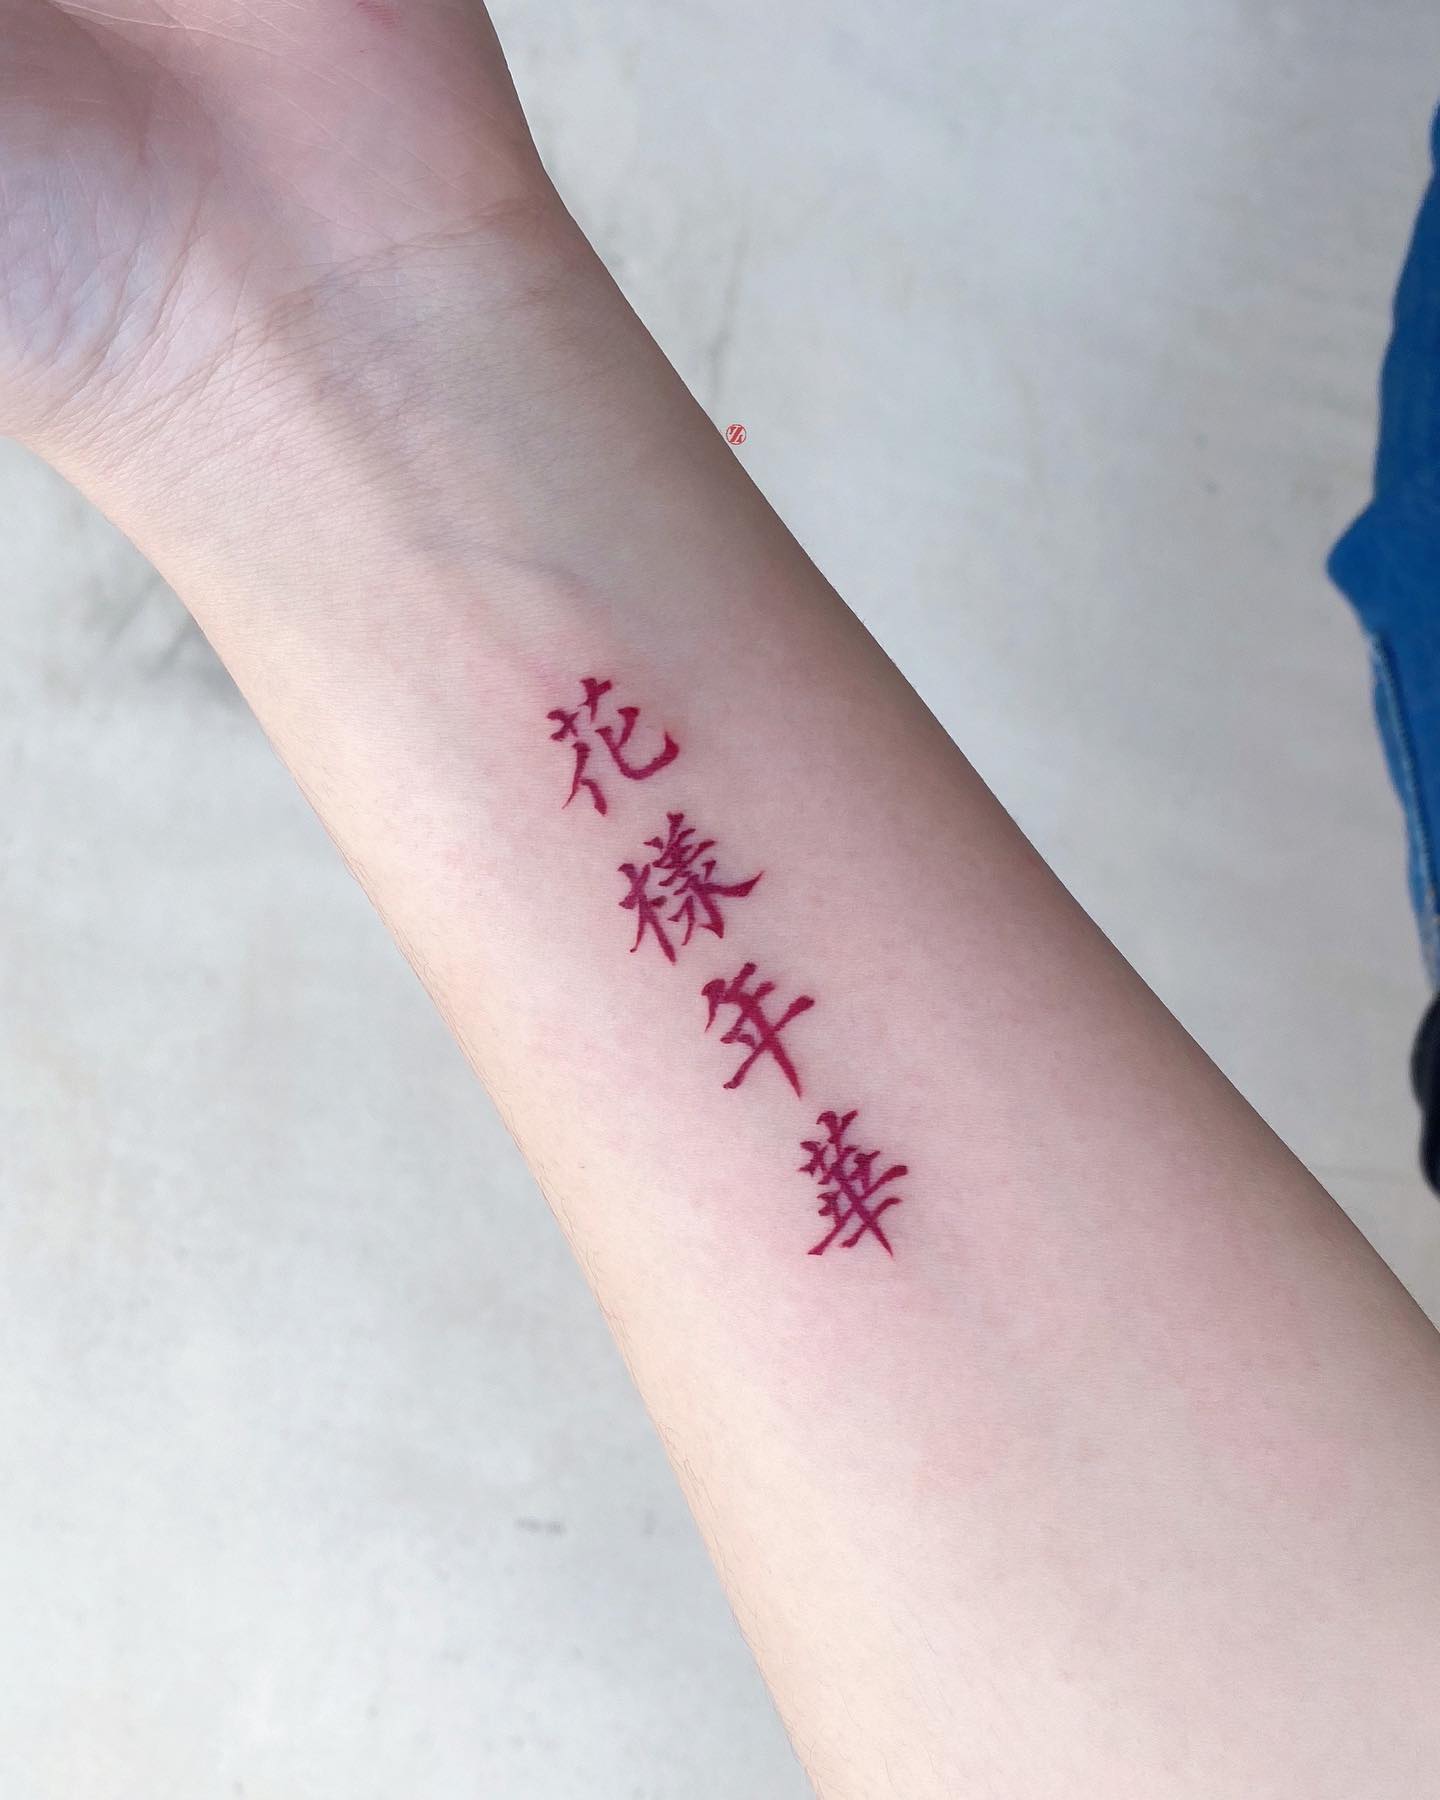 Tatuaje rojo chino en el brazo interior.